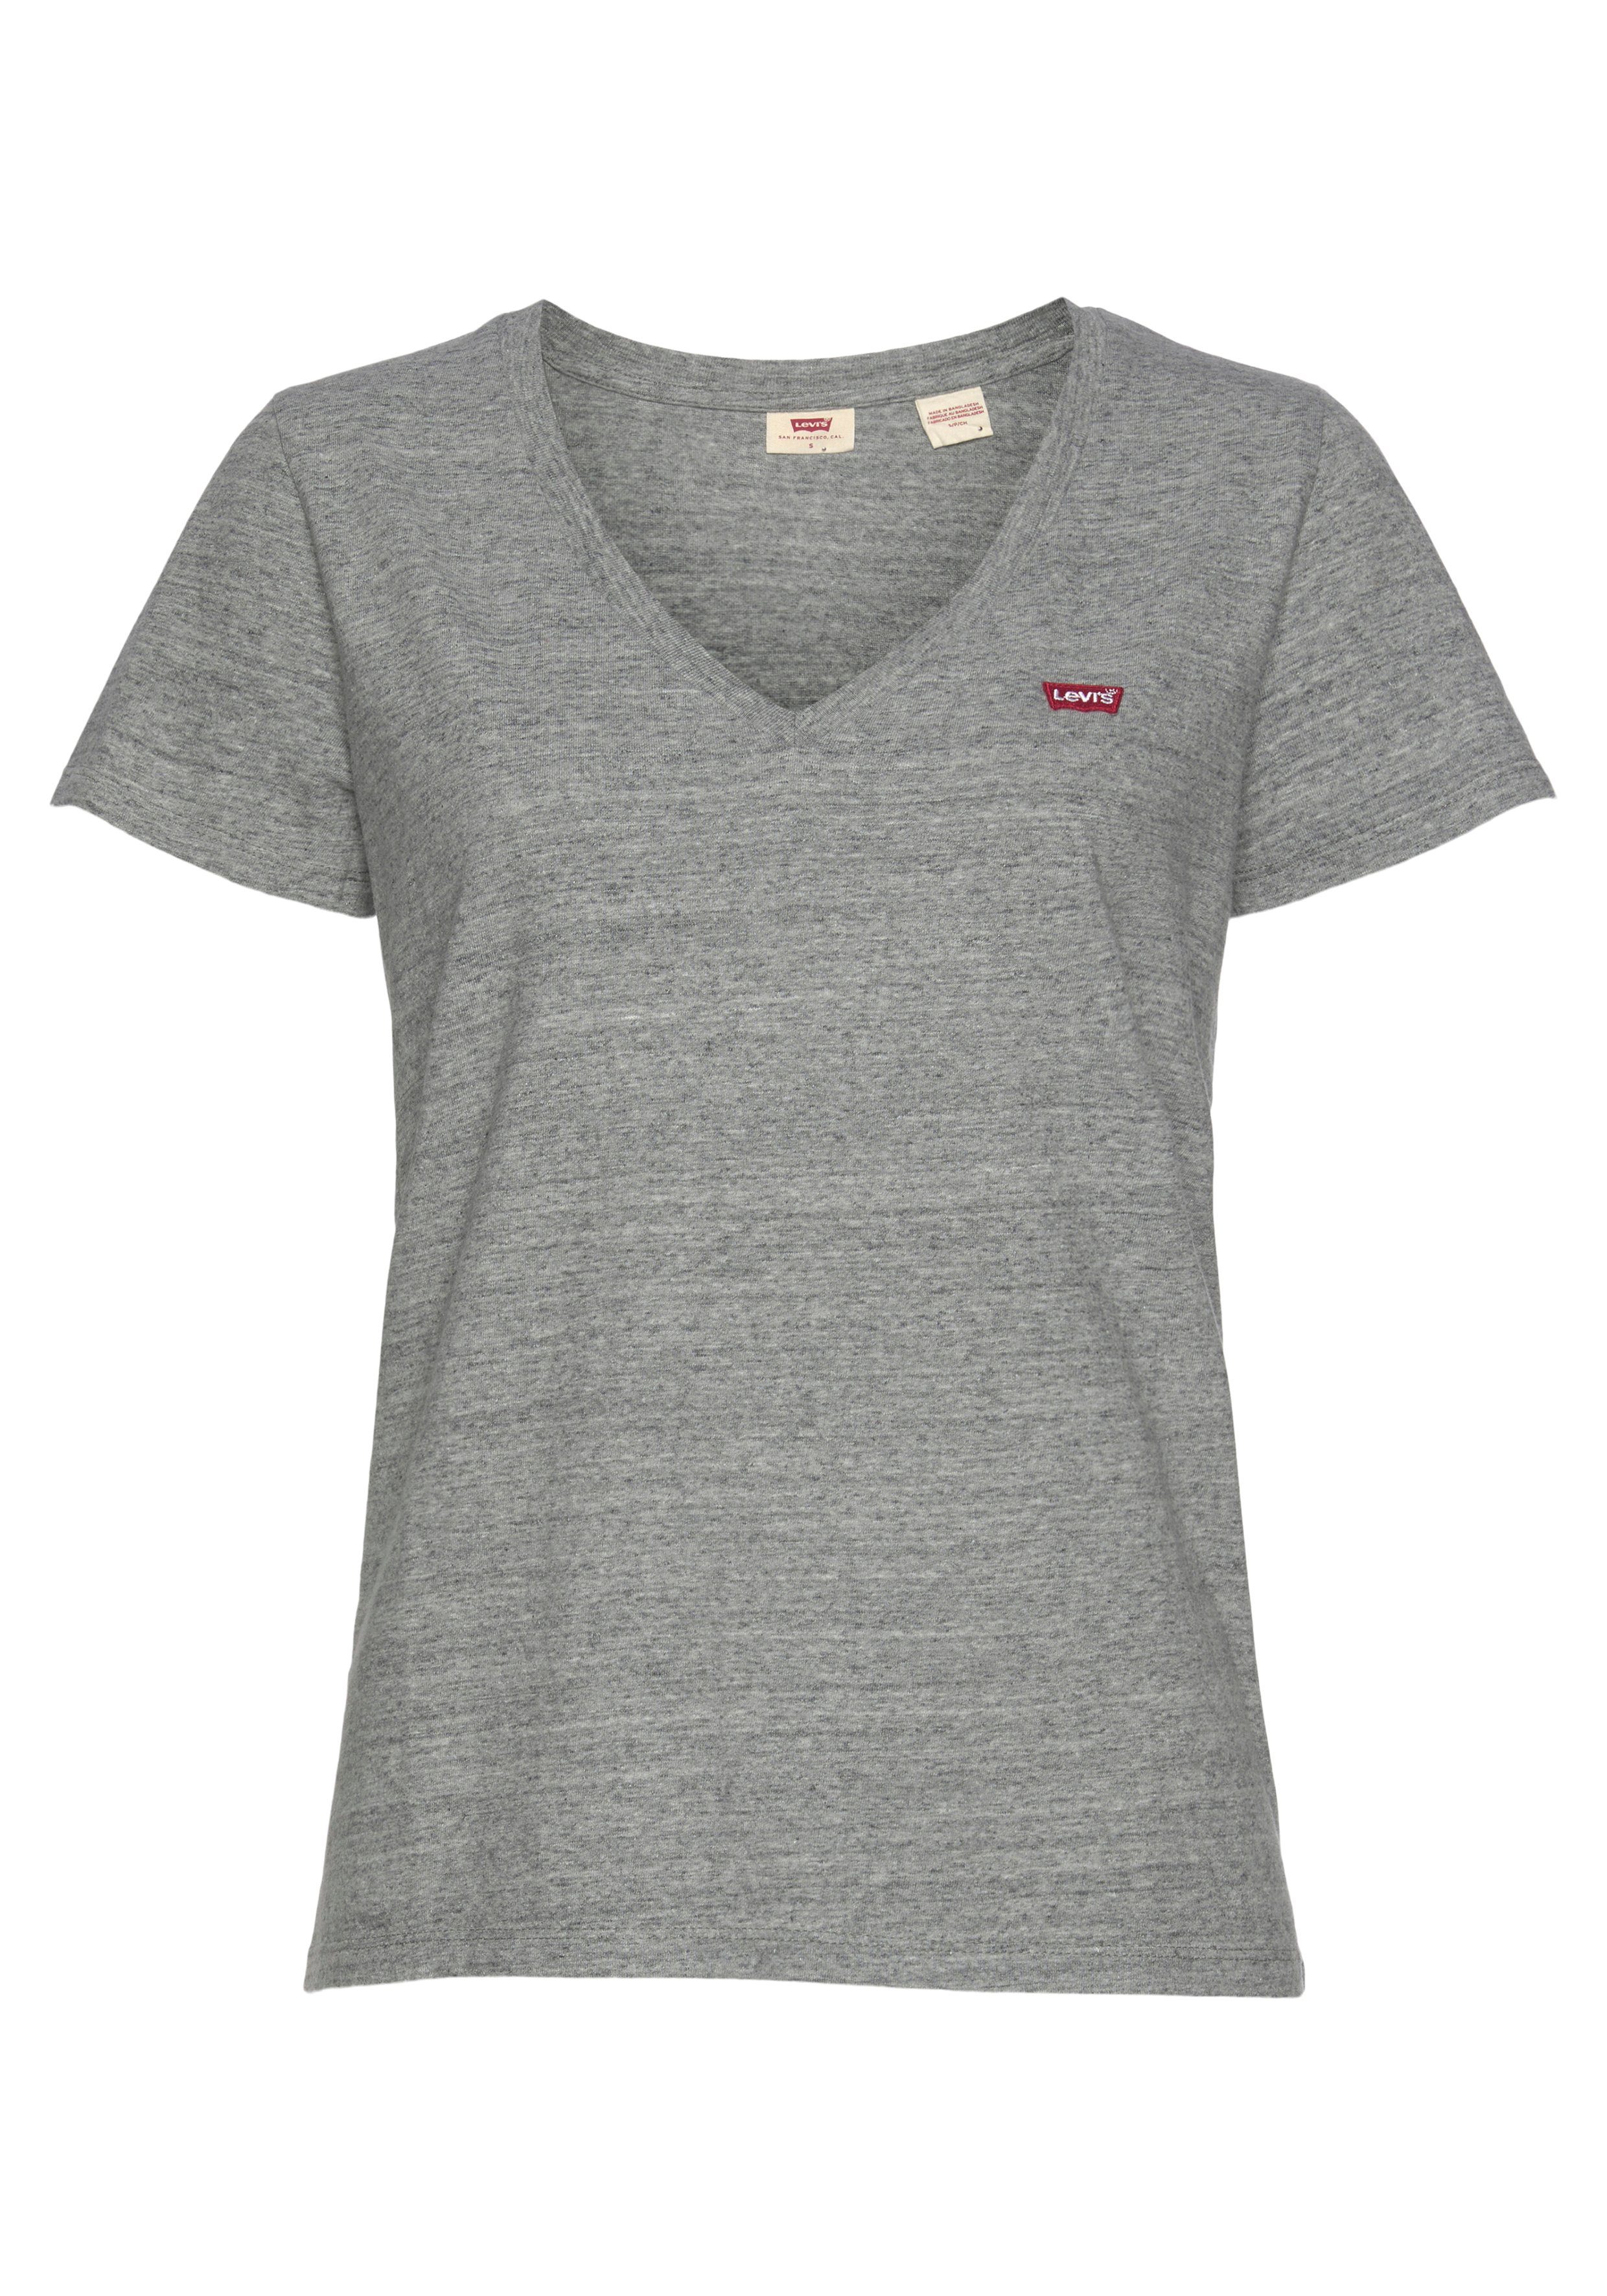 Levi's® T-Shirt grau-meliert weiß,